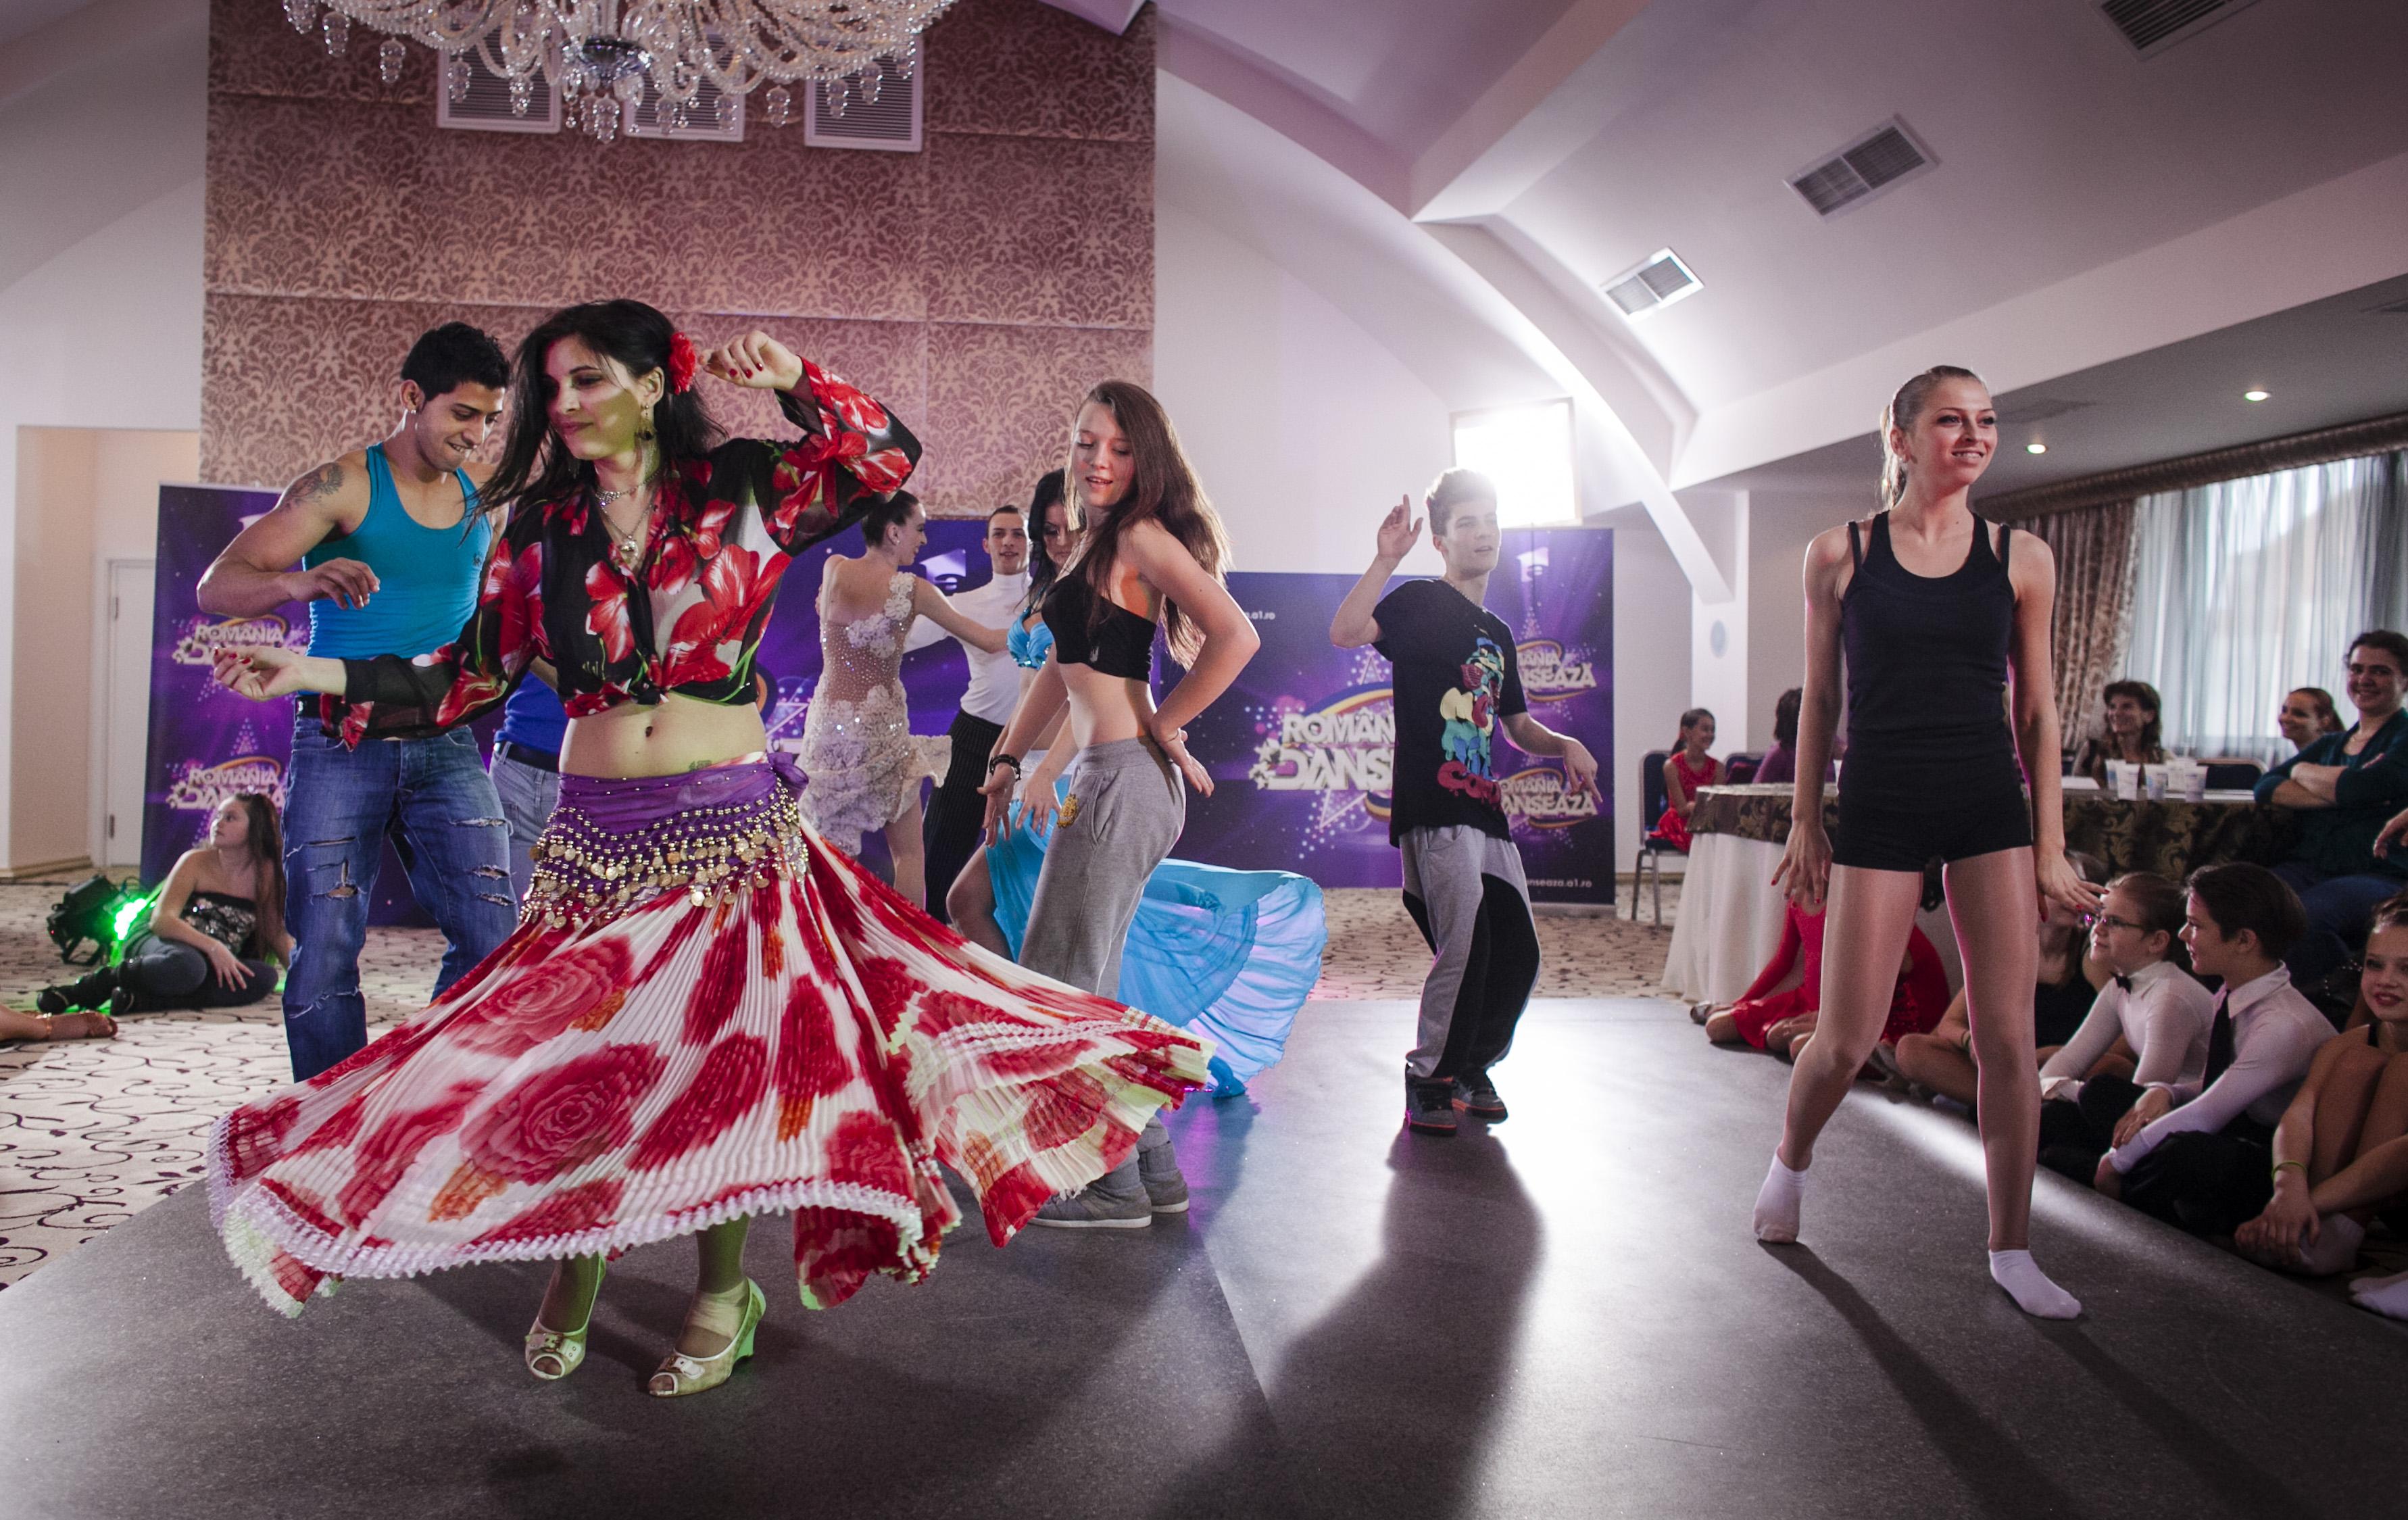 A doua zi de preselectii de la Timisoara! Romania danseaza! Vezi super galerie foto!